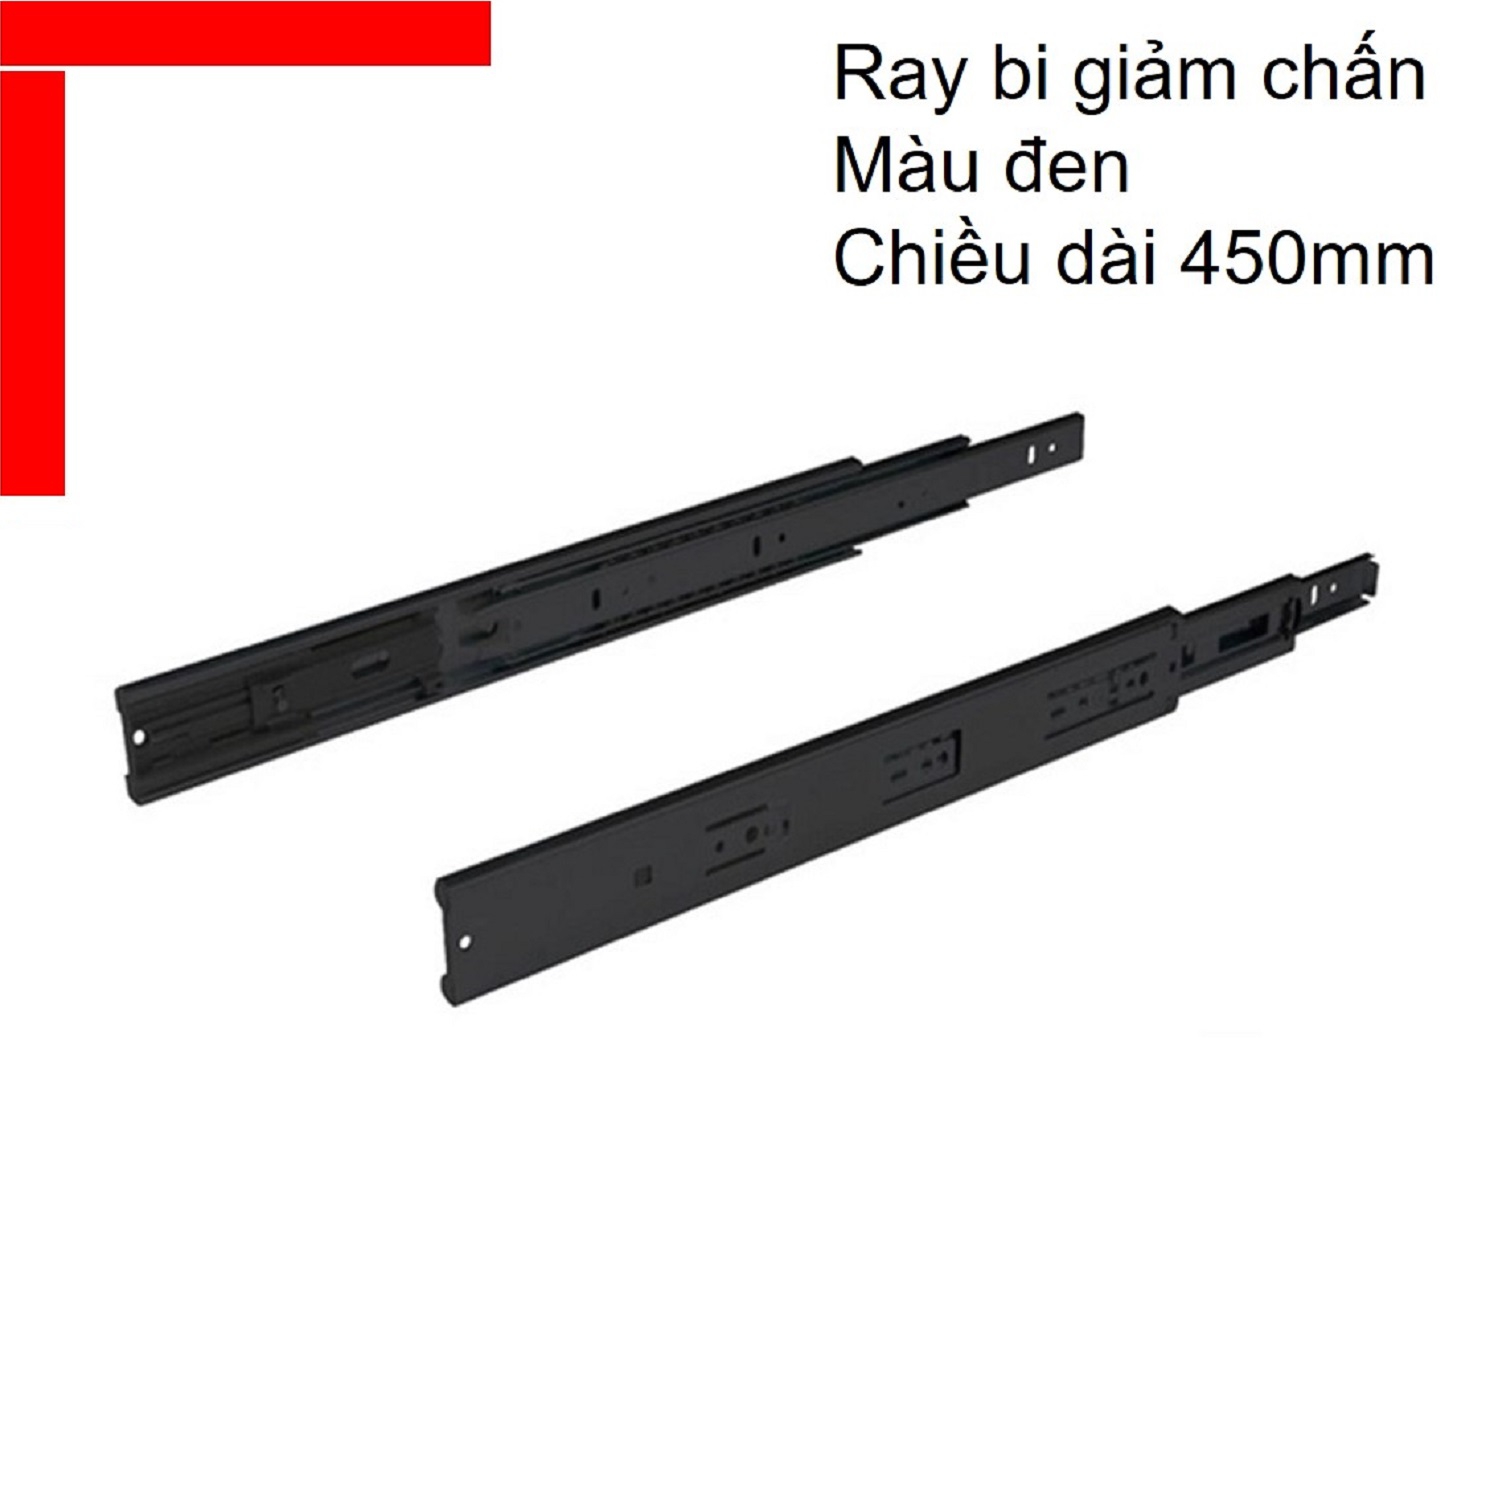 Ray bi giảm chấn Hafele chiều dài 450mm màu đen 494.02.074